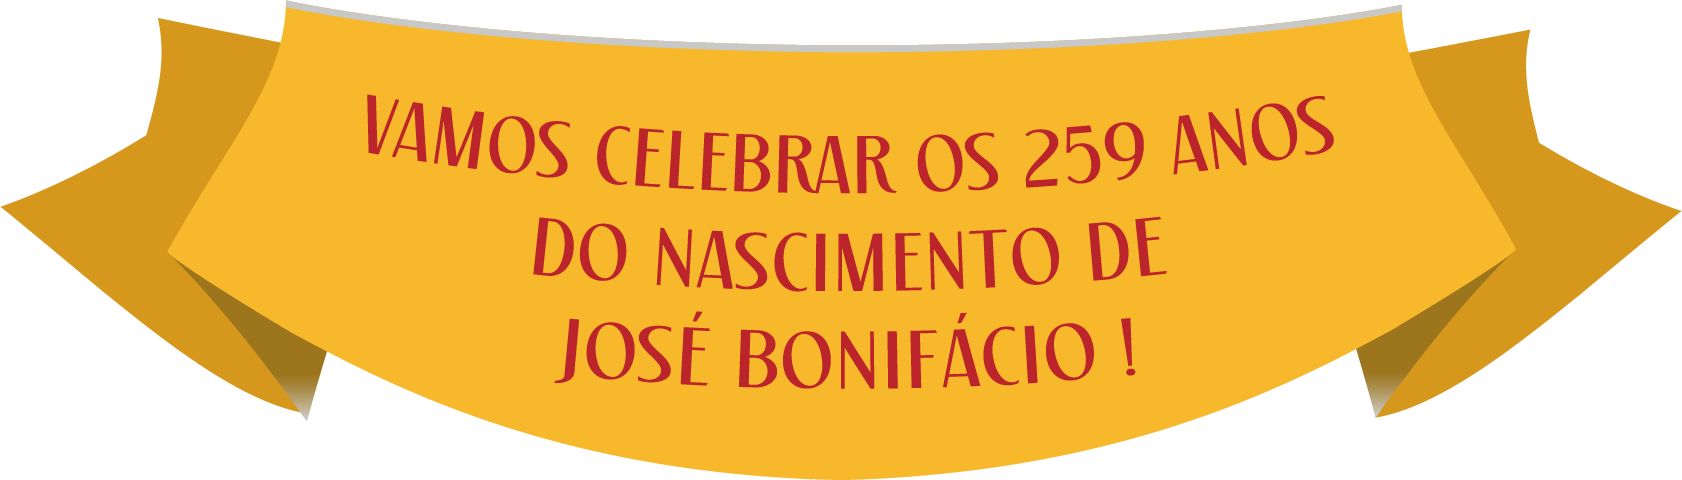 Vamos celebrar os 259 anos do nascimento de José Bonifácio